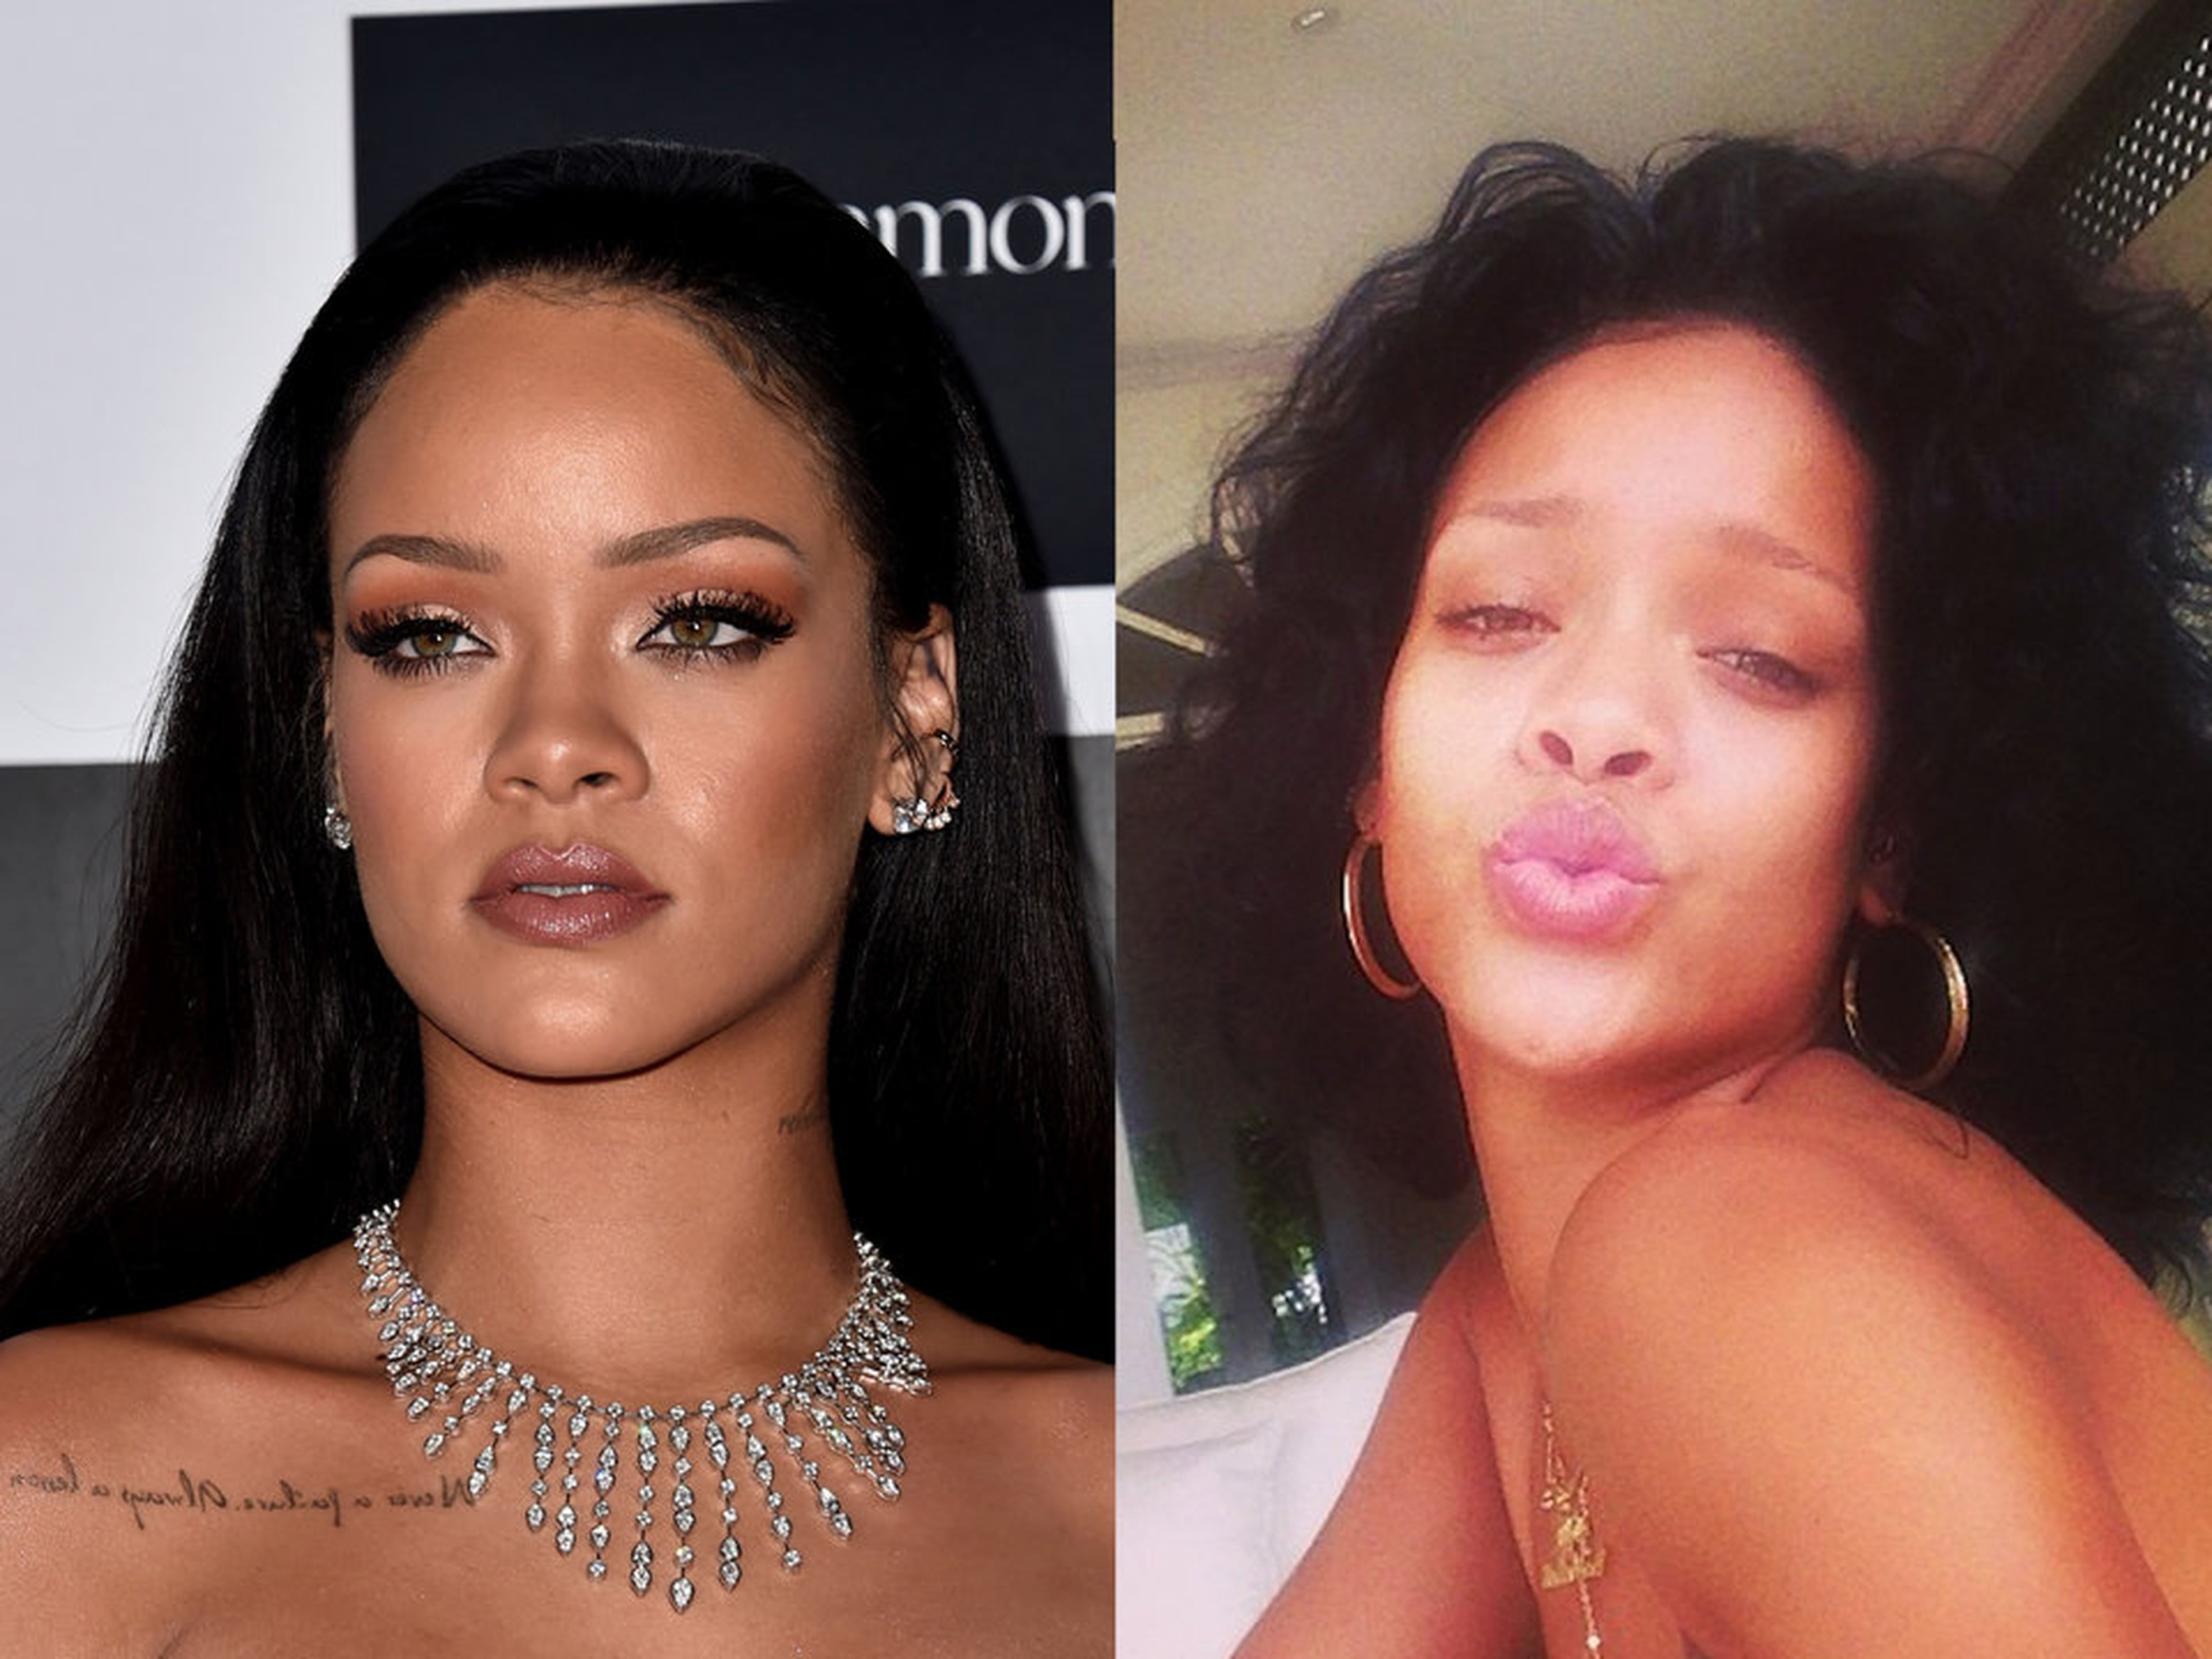 Para Rihanna, el maquillaje es una opción.